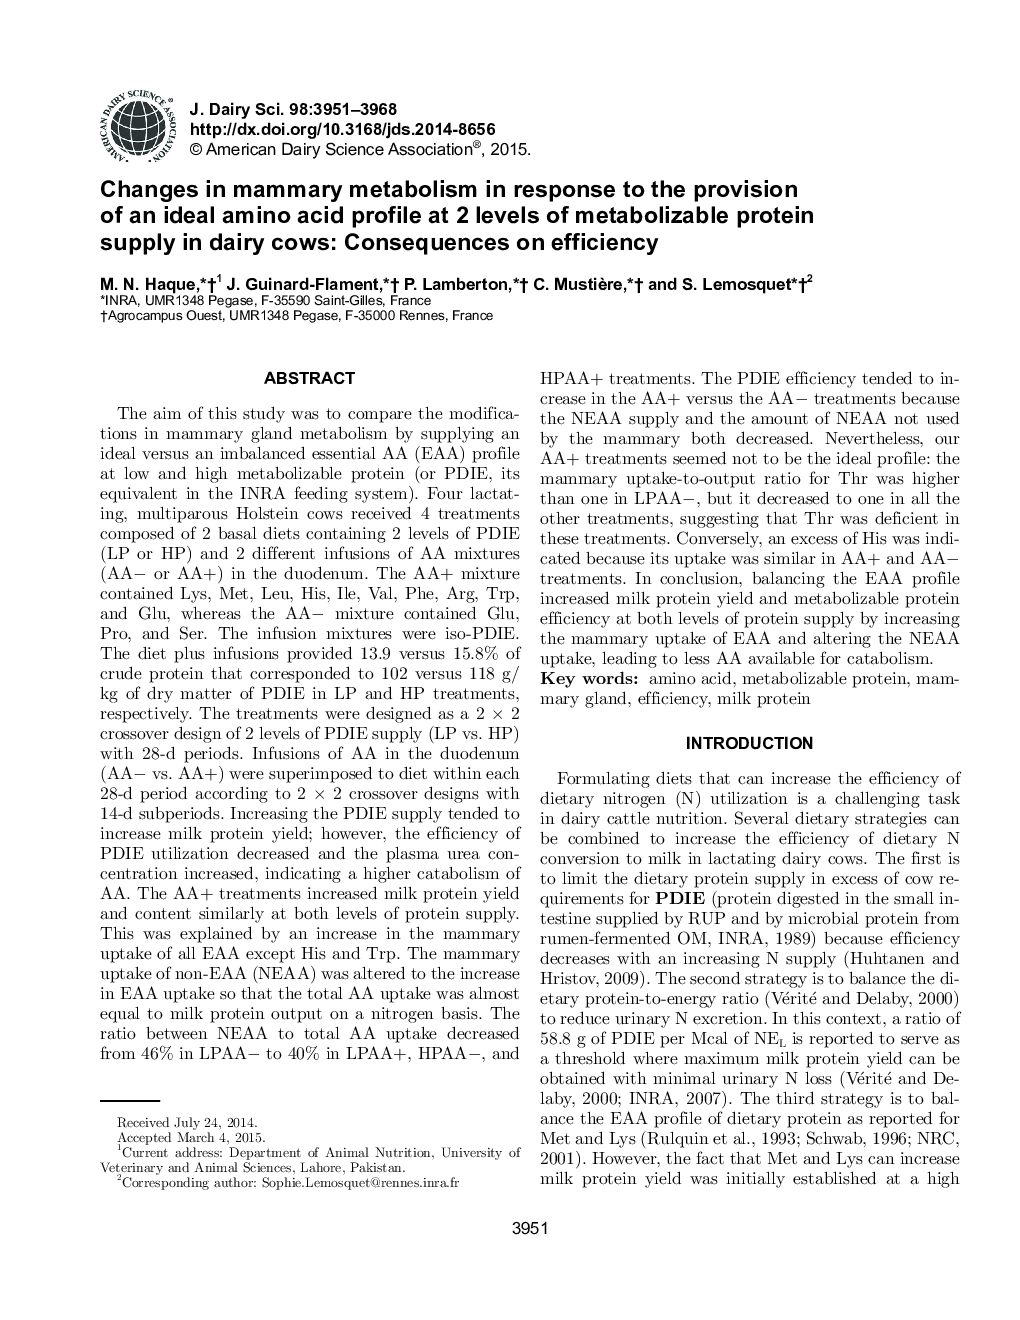 تغییرات در متابولیسم پستان در پاسخ به ارائه نمایه ای اسید آمینه ایده آل در دو سطح پروتئین متابولیزه شده در گاوهای شیری: پیامدهای بهره وری 